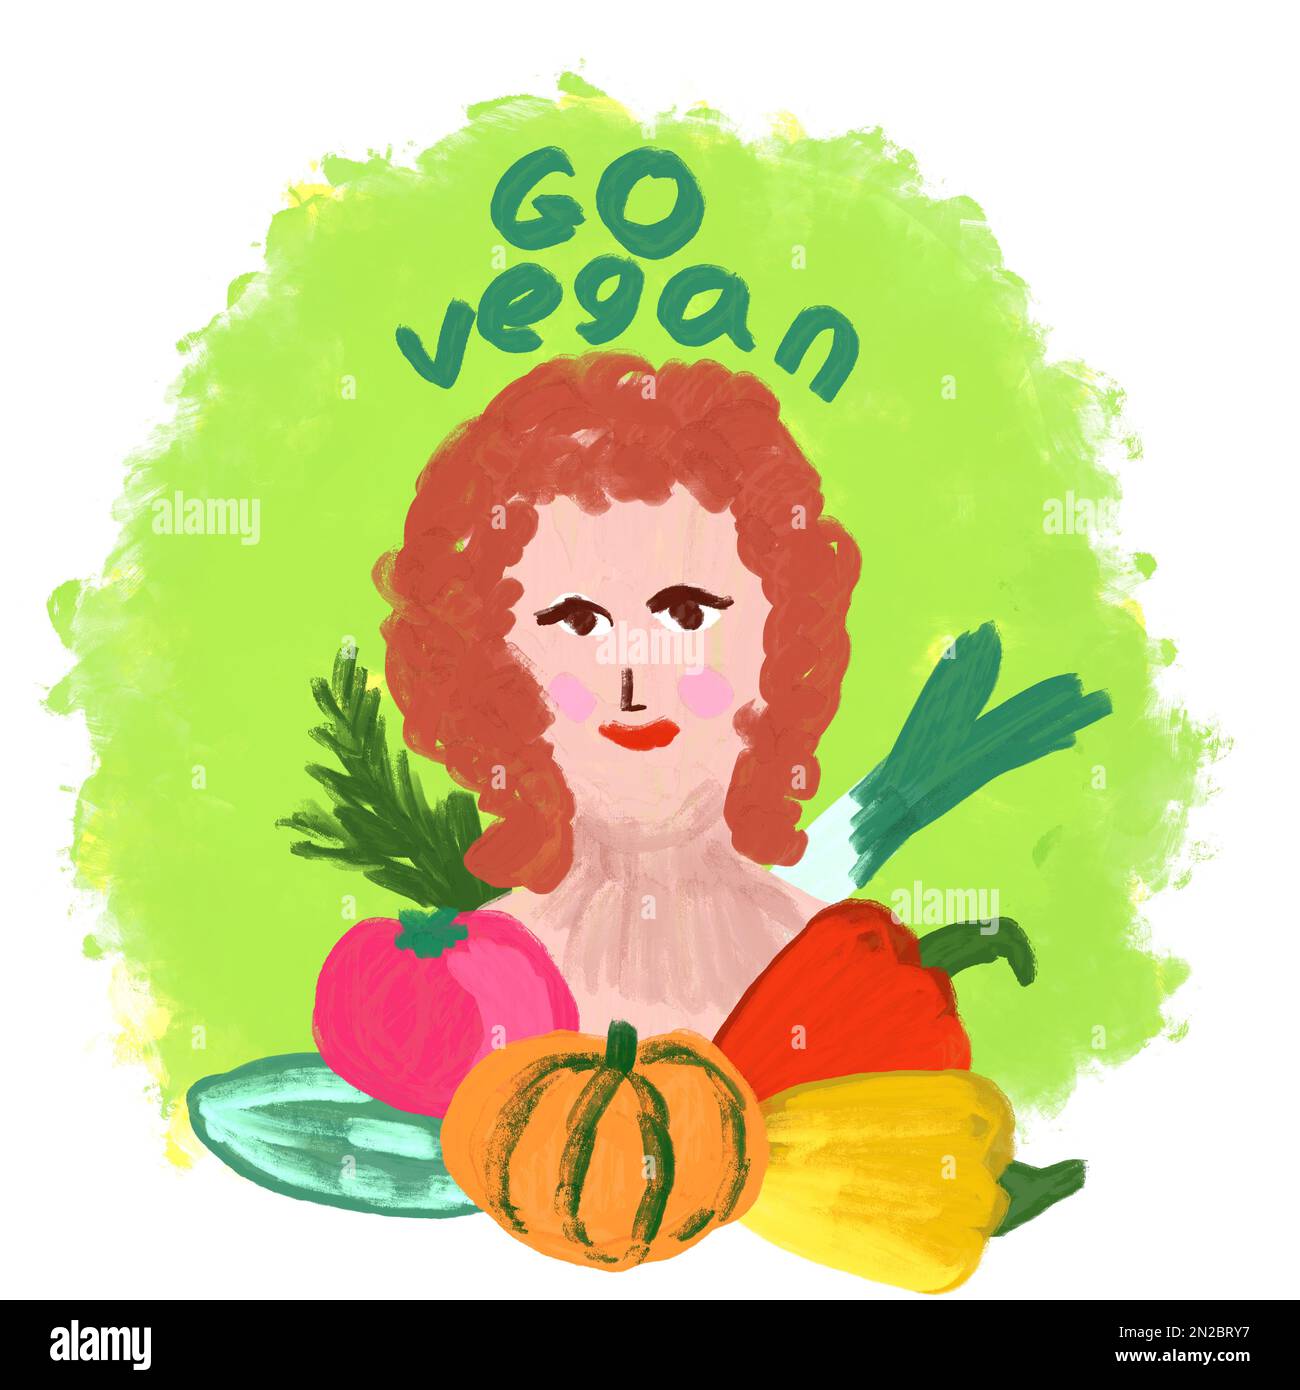 Handgezeichnete Künstlerdarstellung einer Frau mit verschiedenen Gemüsesorten. Verpackungslogo für grüne organische frische Lebensmittel, vegane Produkte aus Karotten-Tomaten, lockere Zeichnung im Malstil Stockfoto